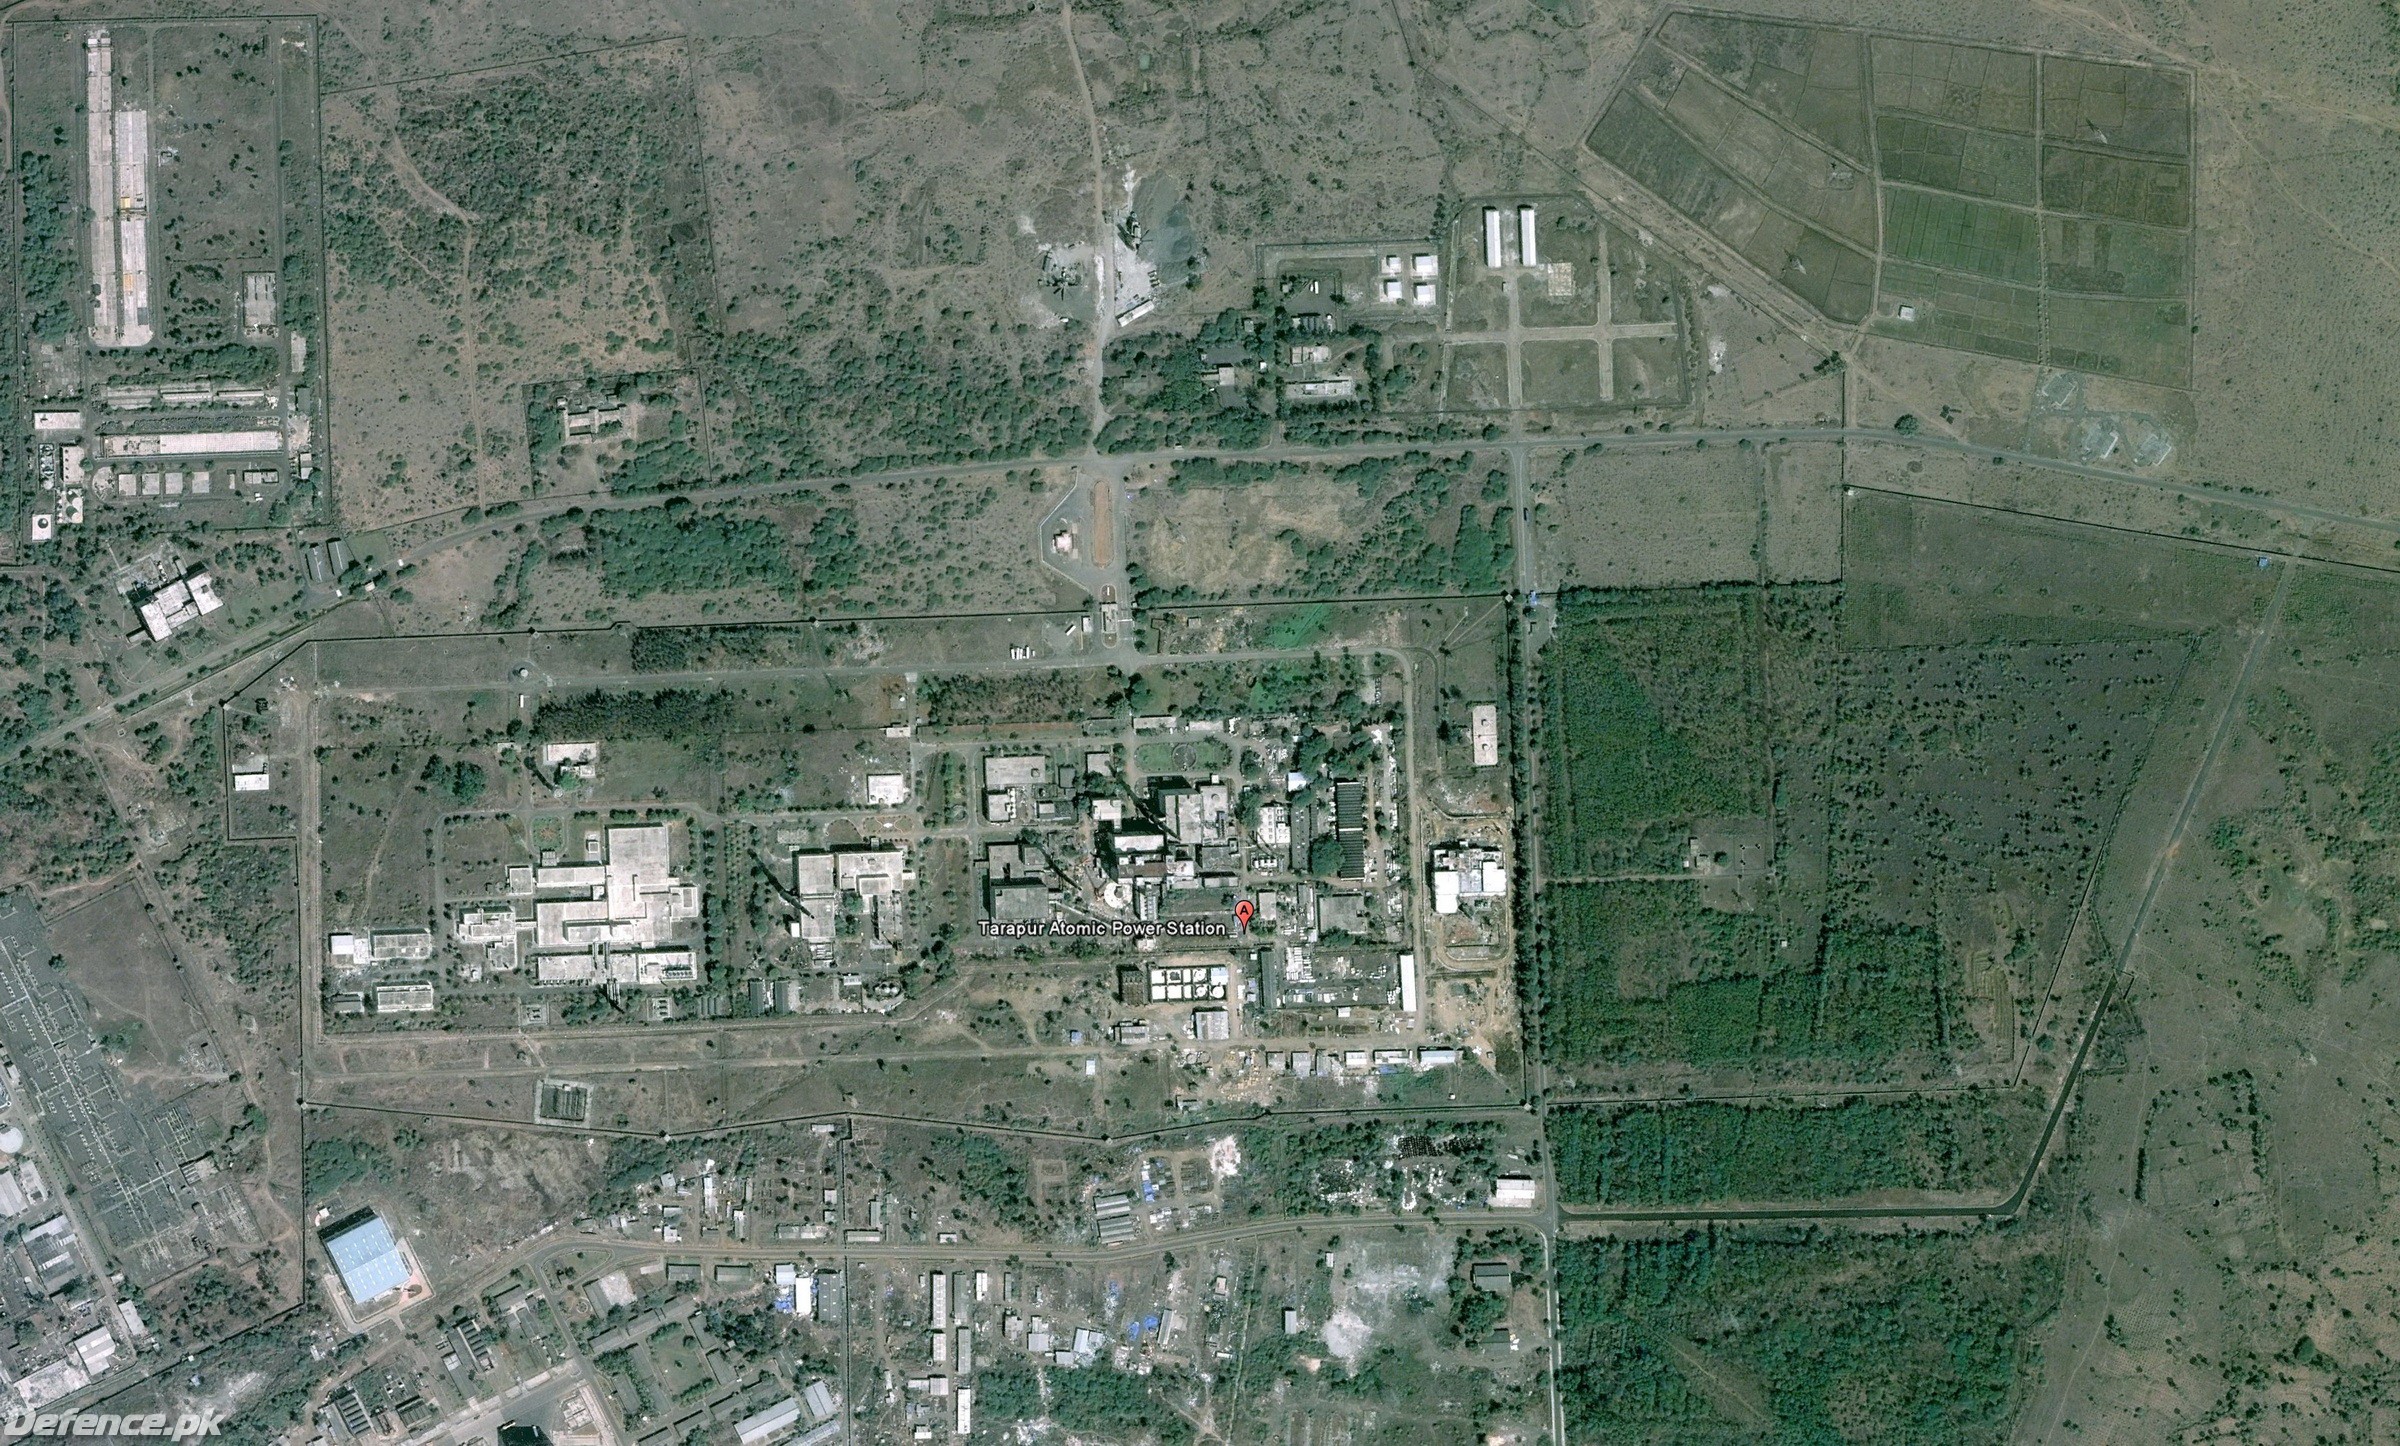 Tarapur Atomic Power Station 3